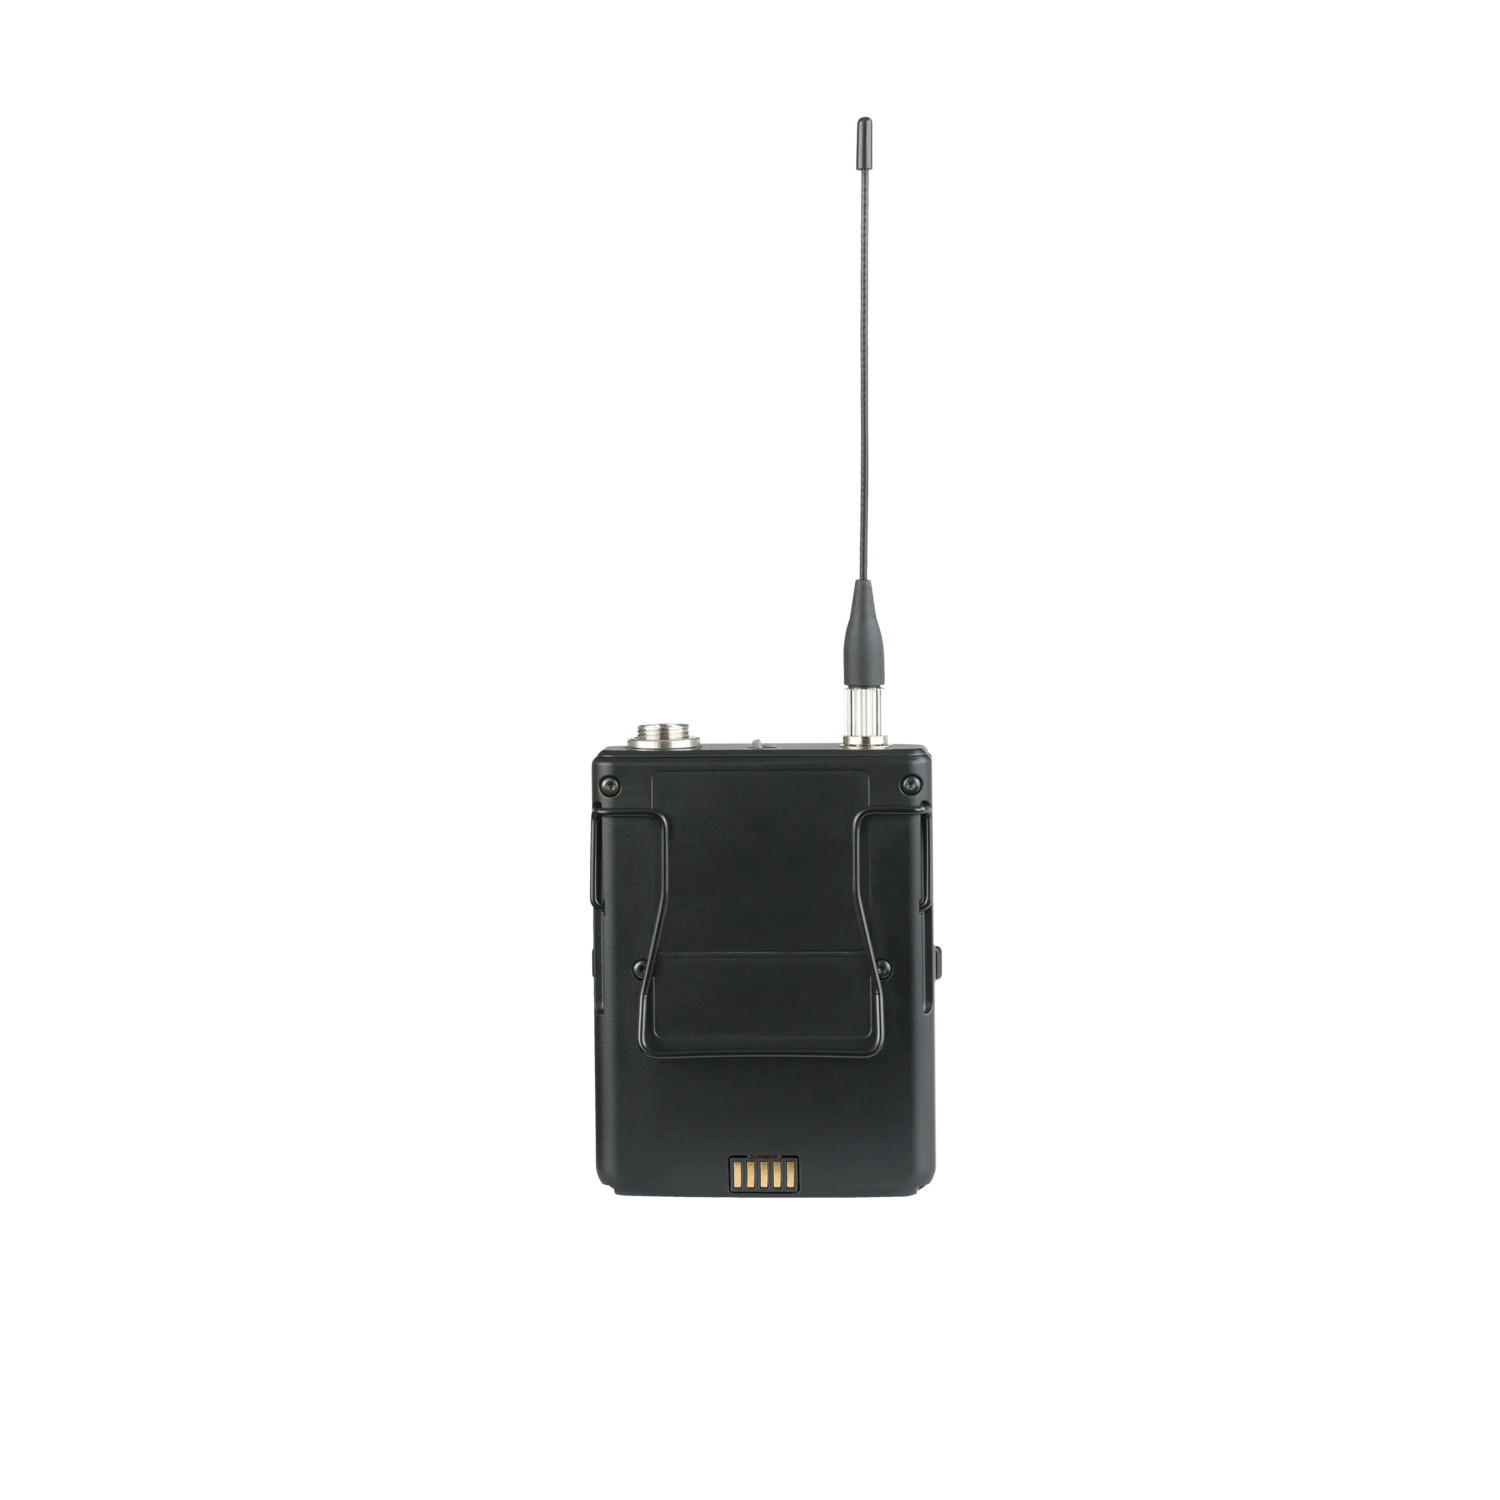 Shure-ULXD1-G51-digitale-bodypack-zender